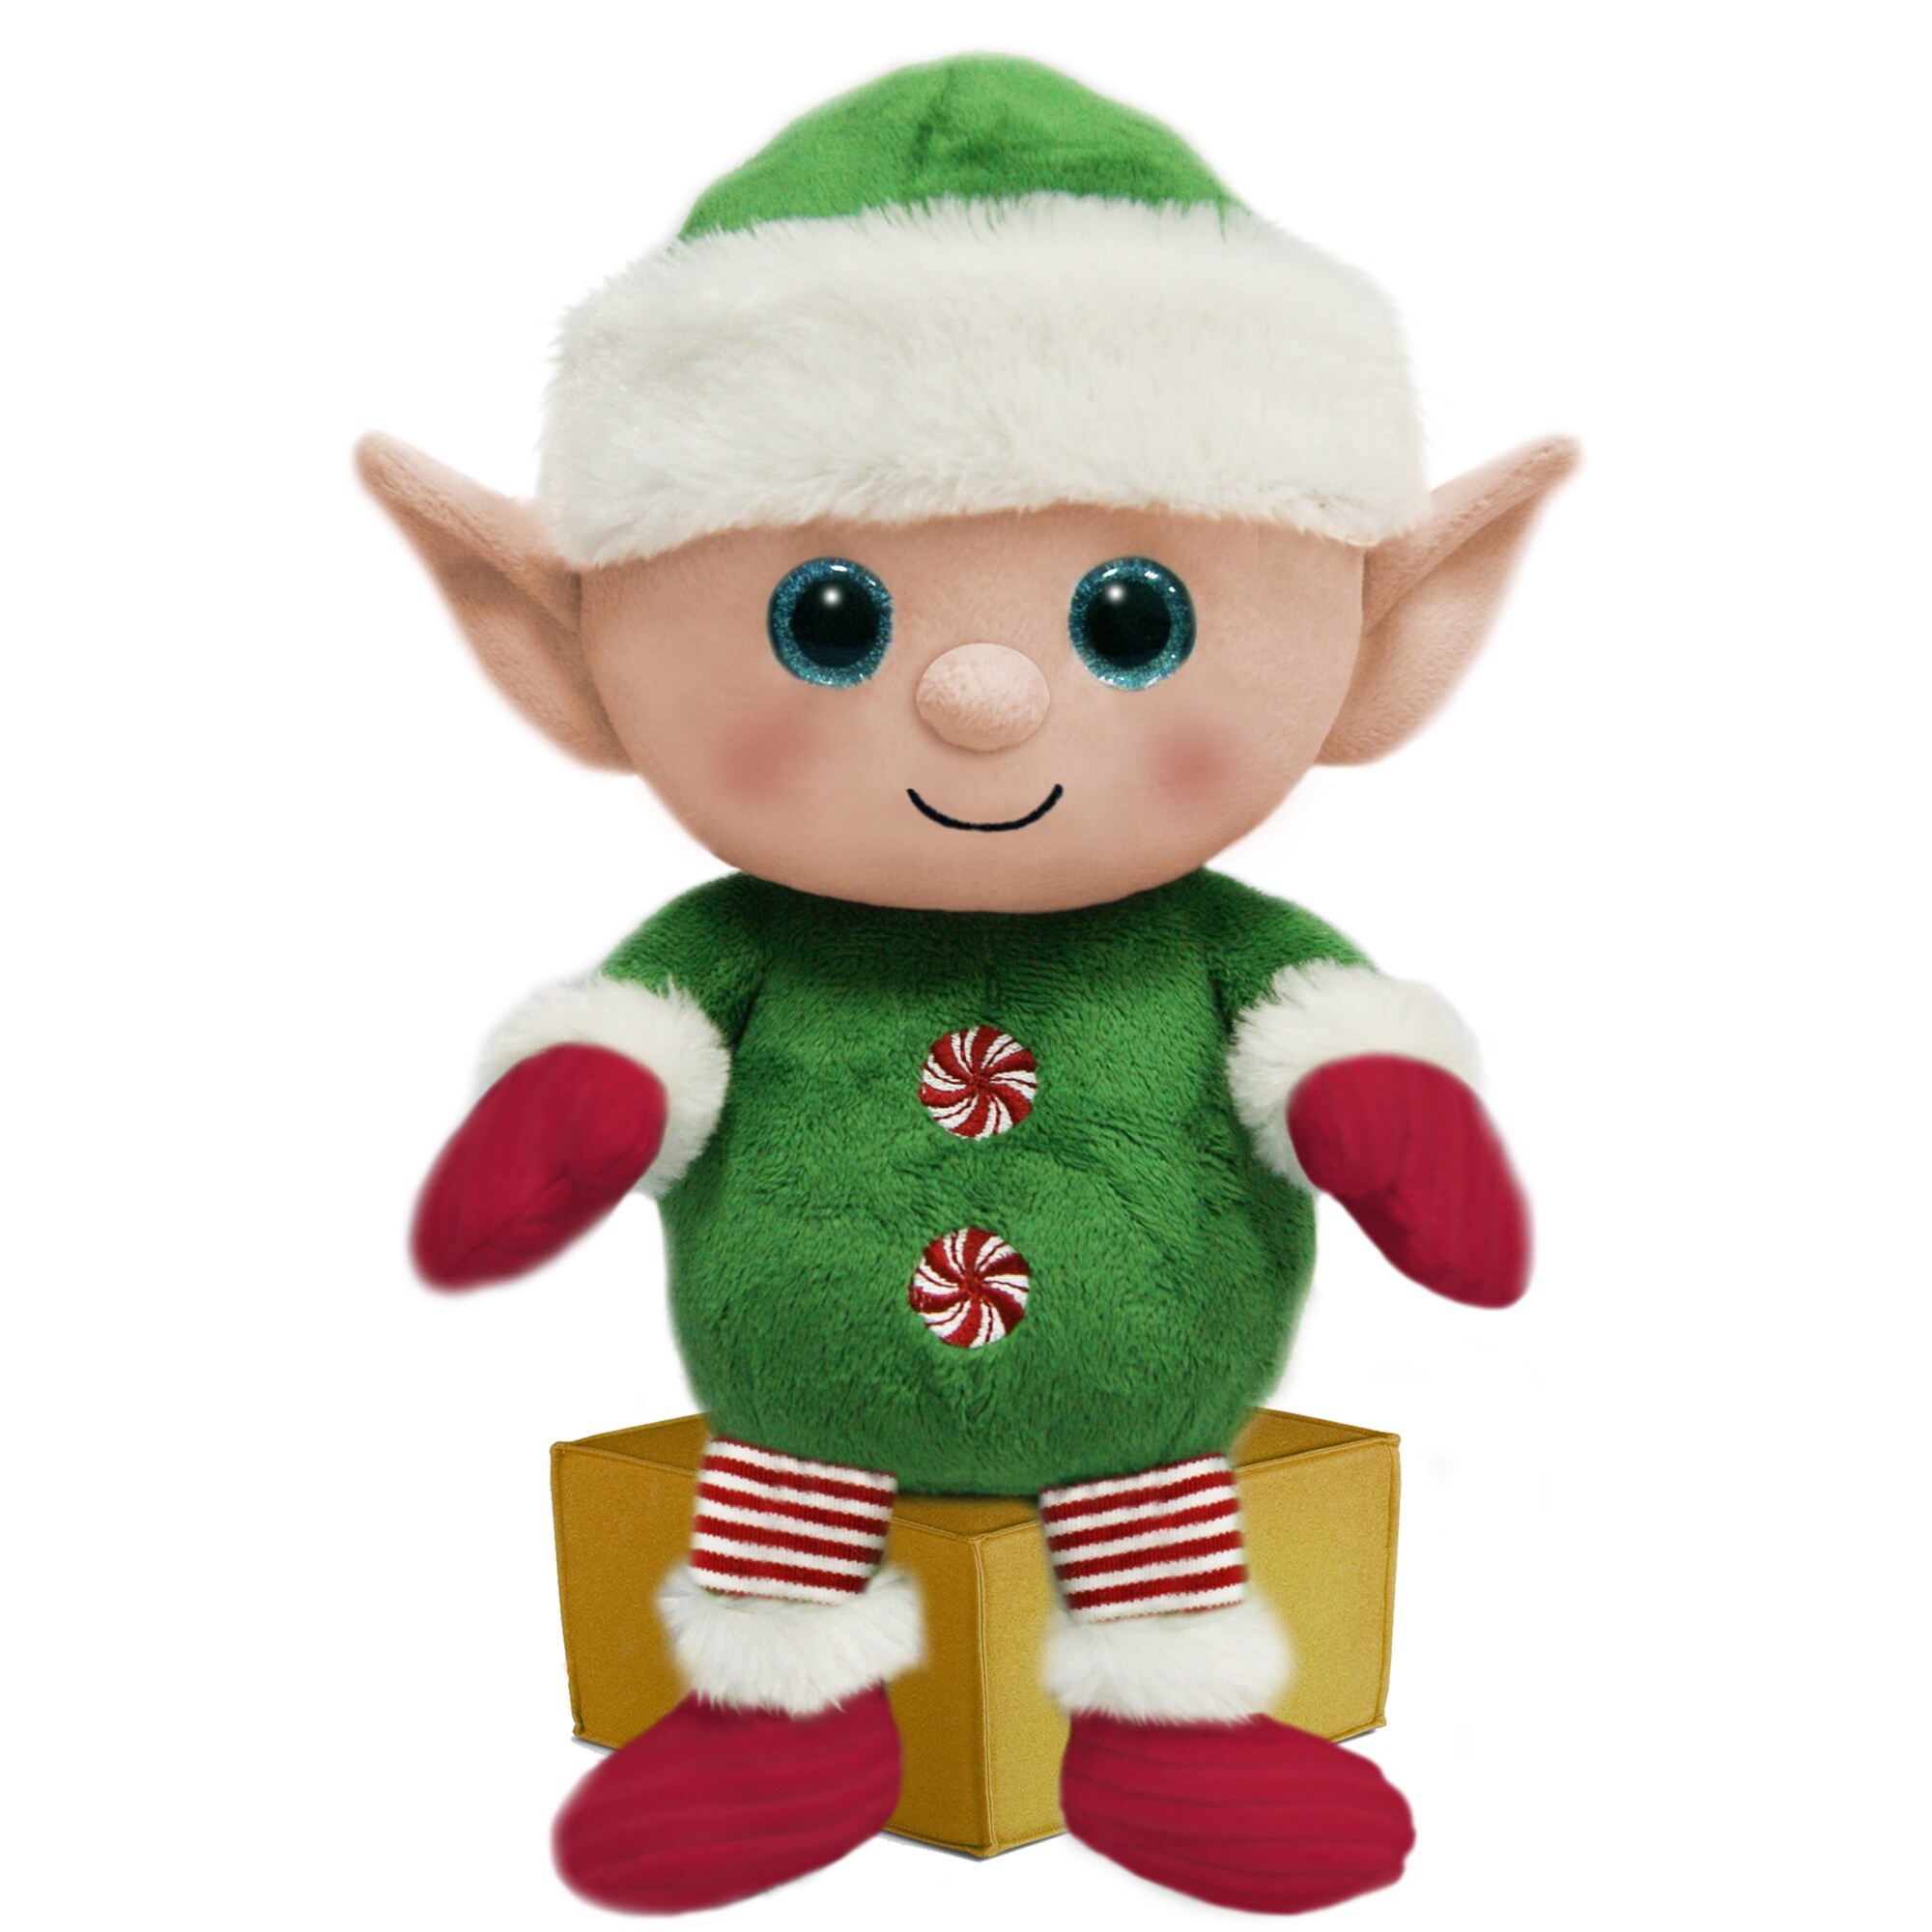 cuddly elf